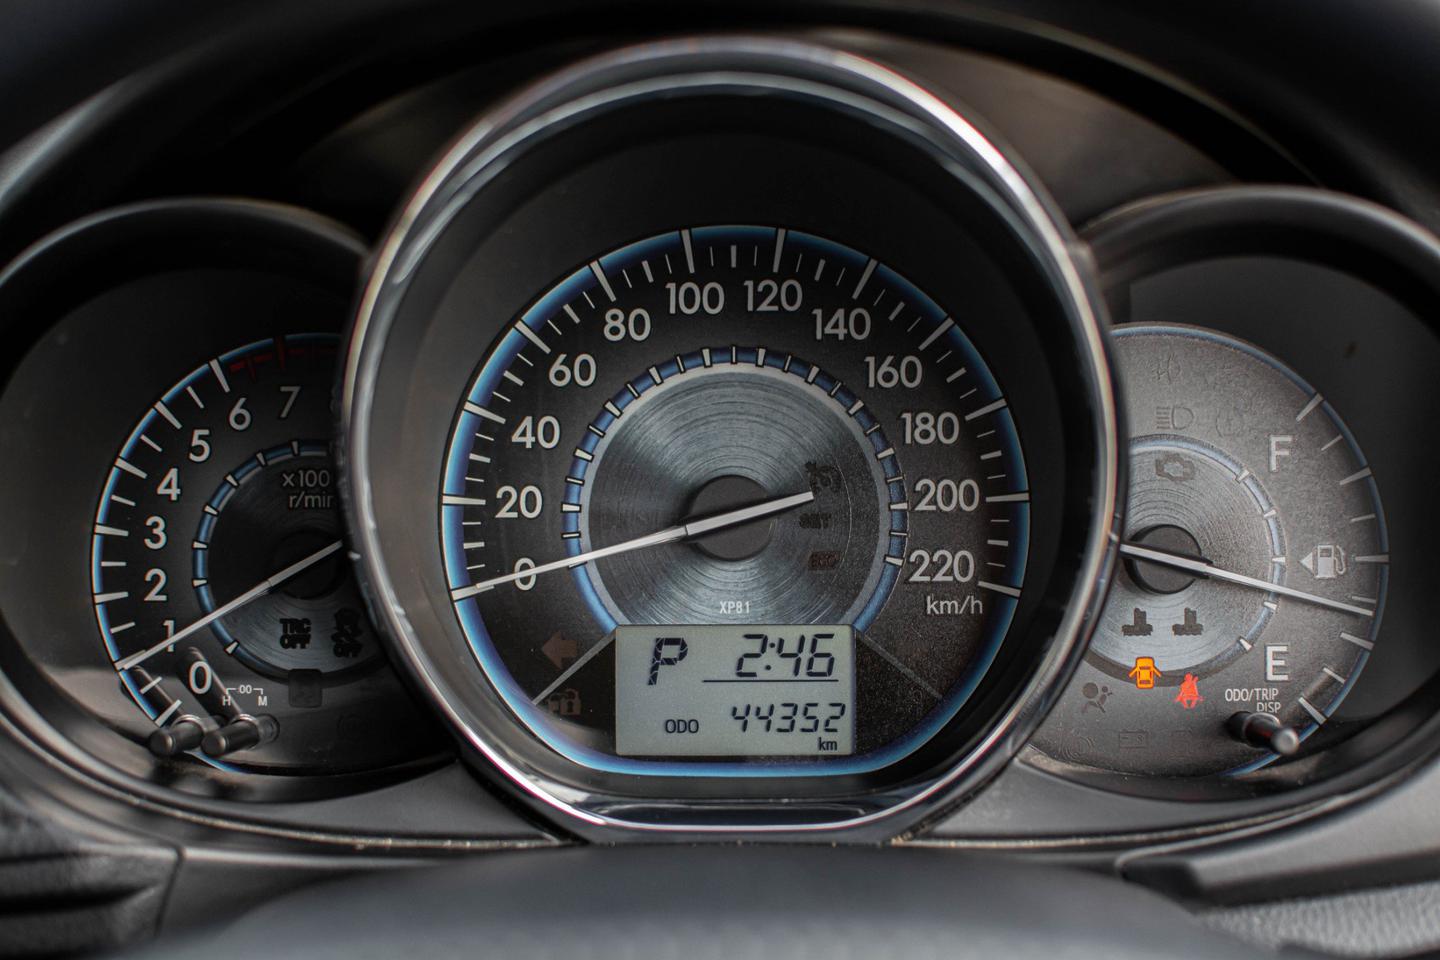 ปี 2016 Toyota Vios 1.5J Dual VVTI สีดำ ไมล์แท้วิ่งน้อย  รูปเล็กที่ 6